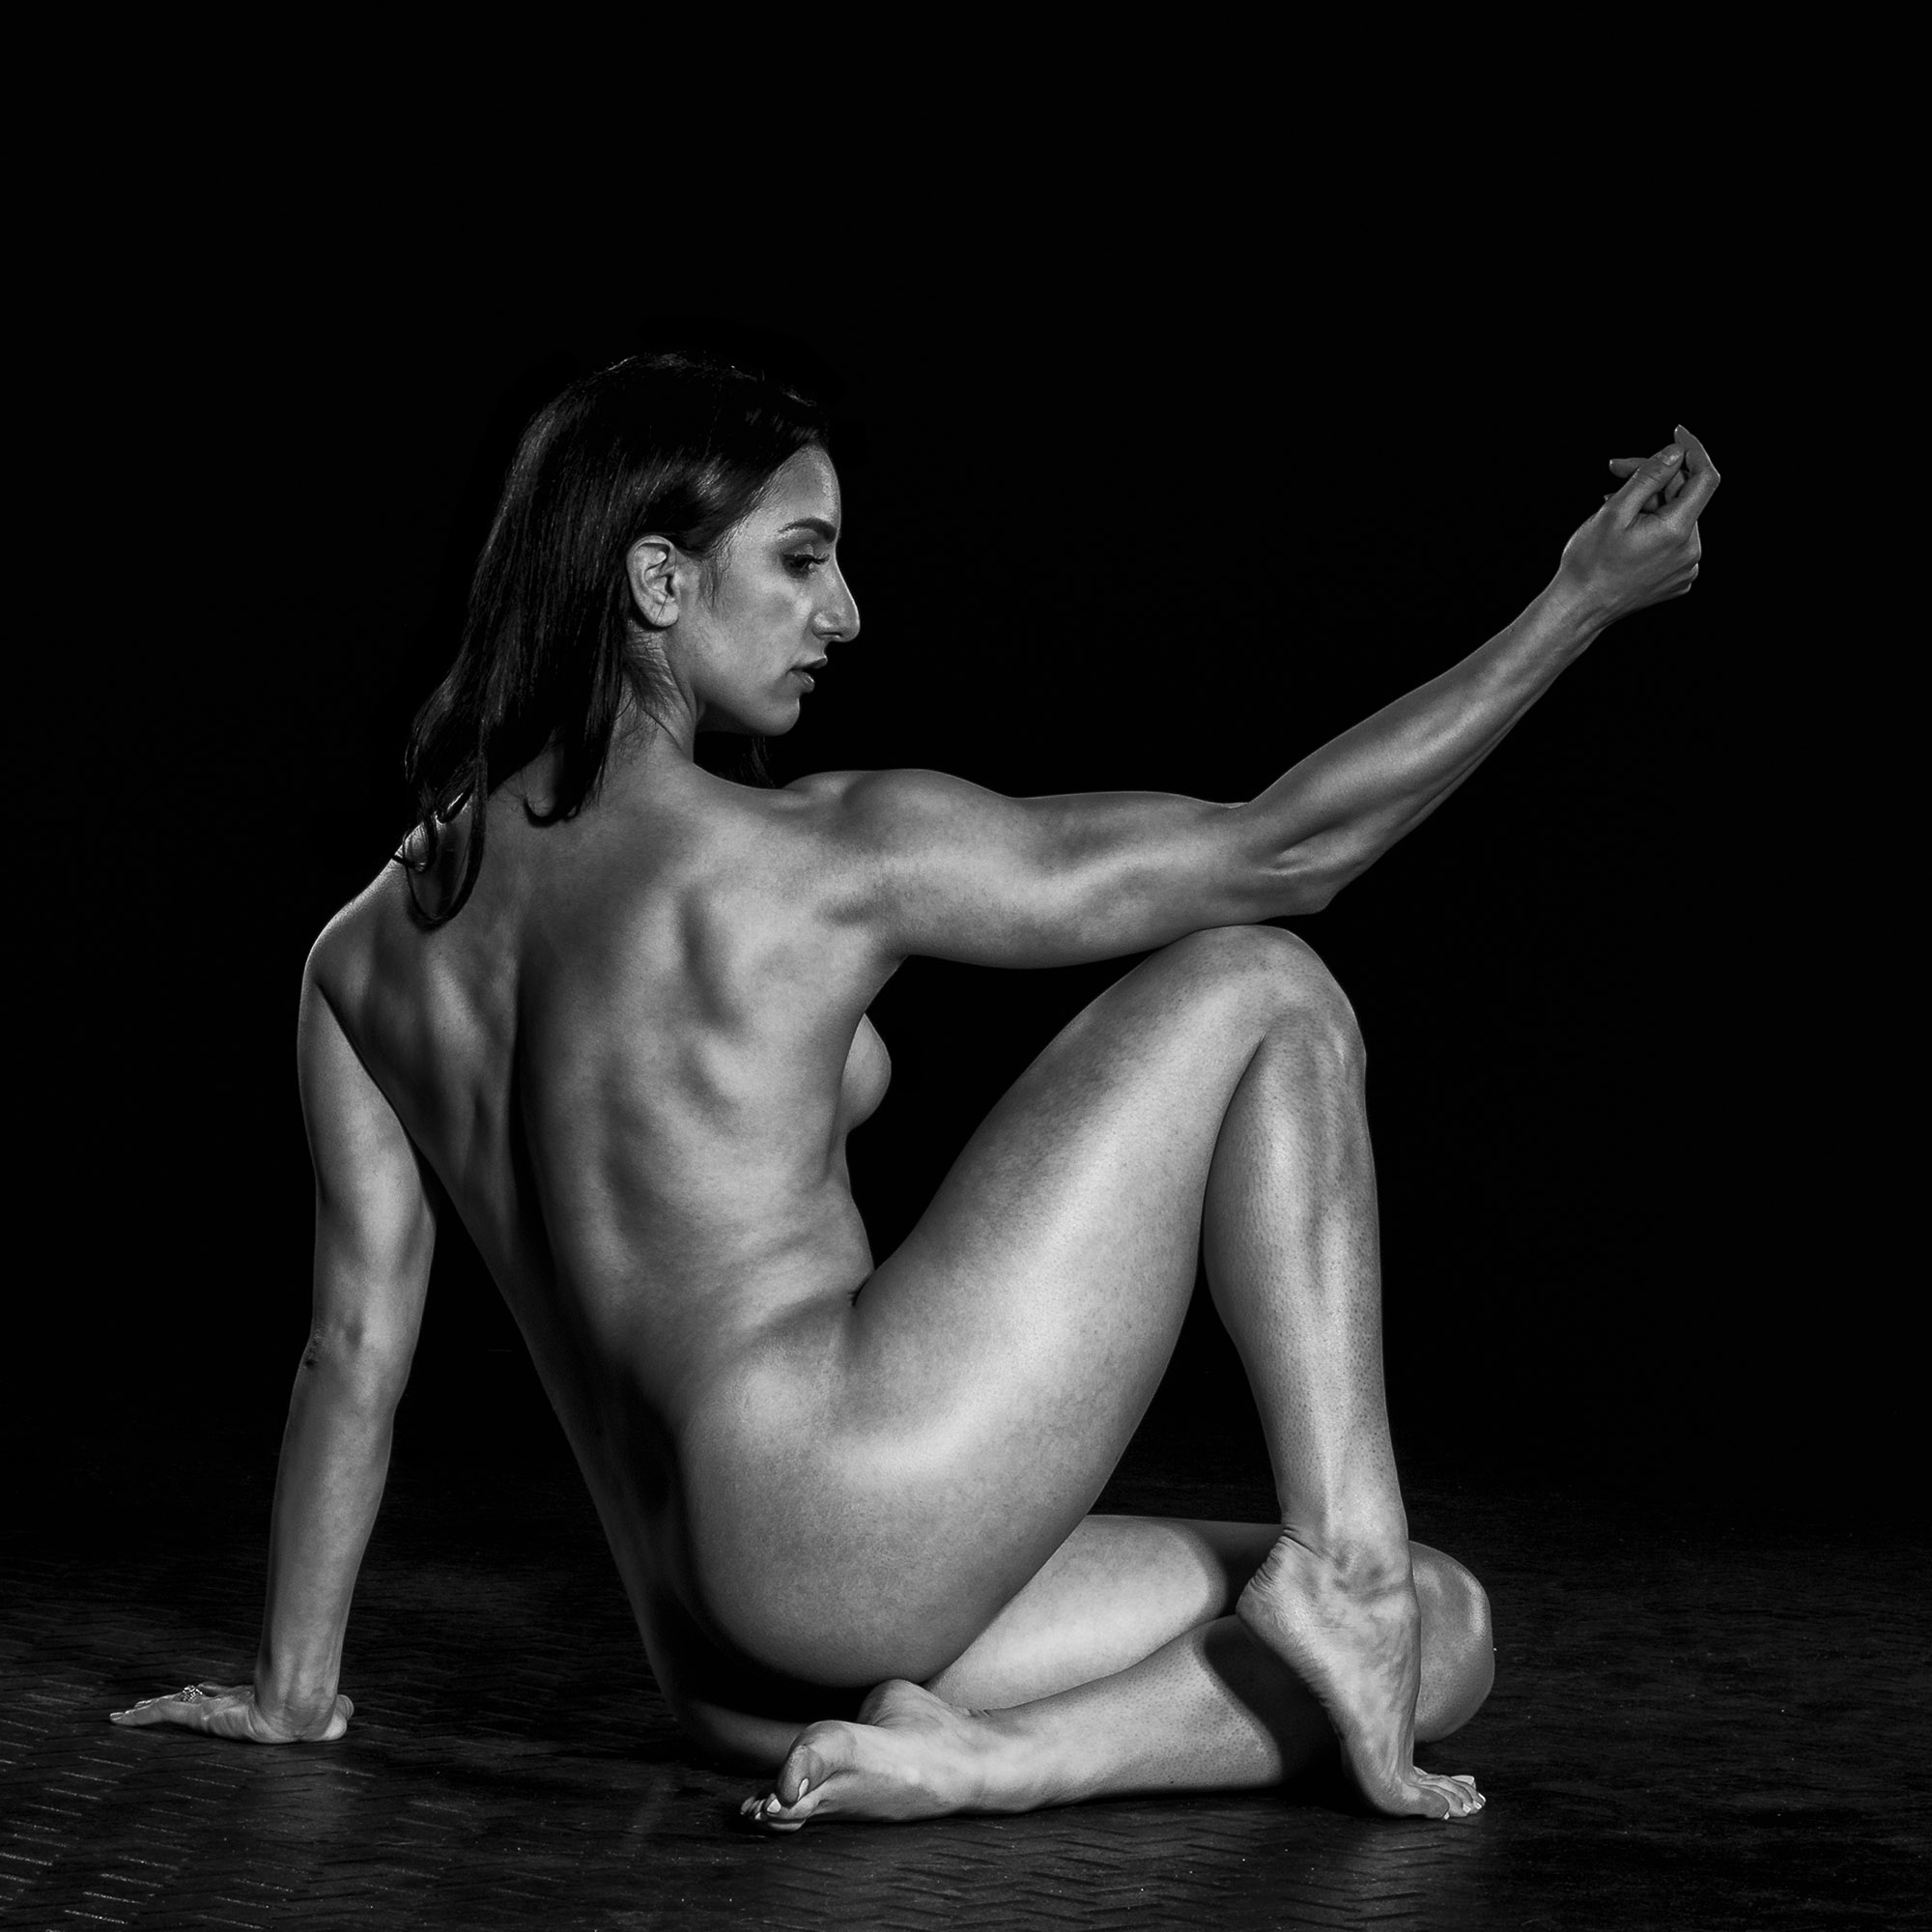 Athlete Female Nude. 